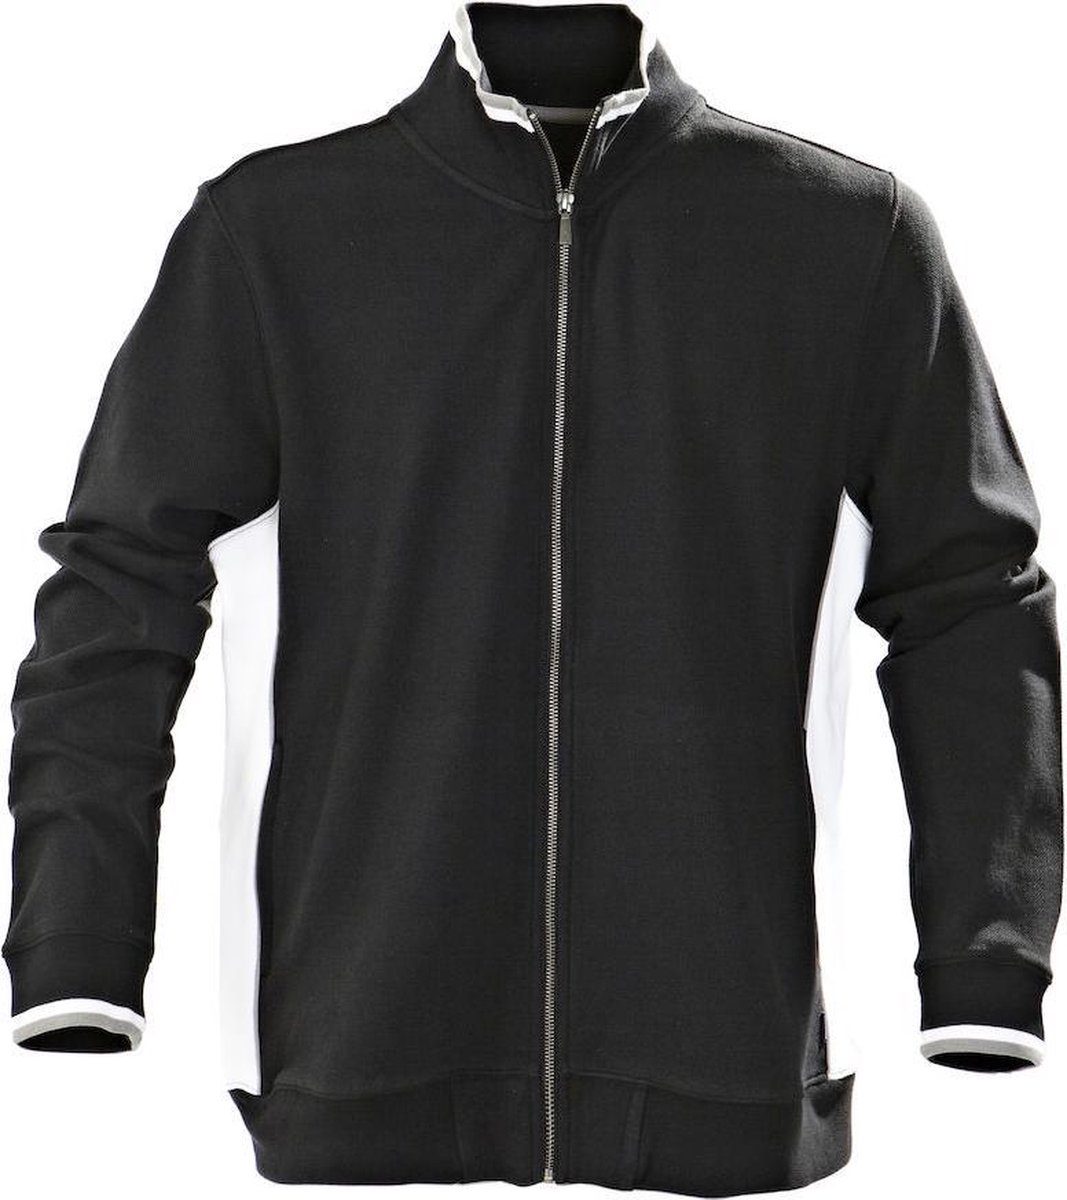 Harvest Atlanta Piqué Jacket Vest Zwart 2132018 - Maat L